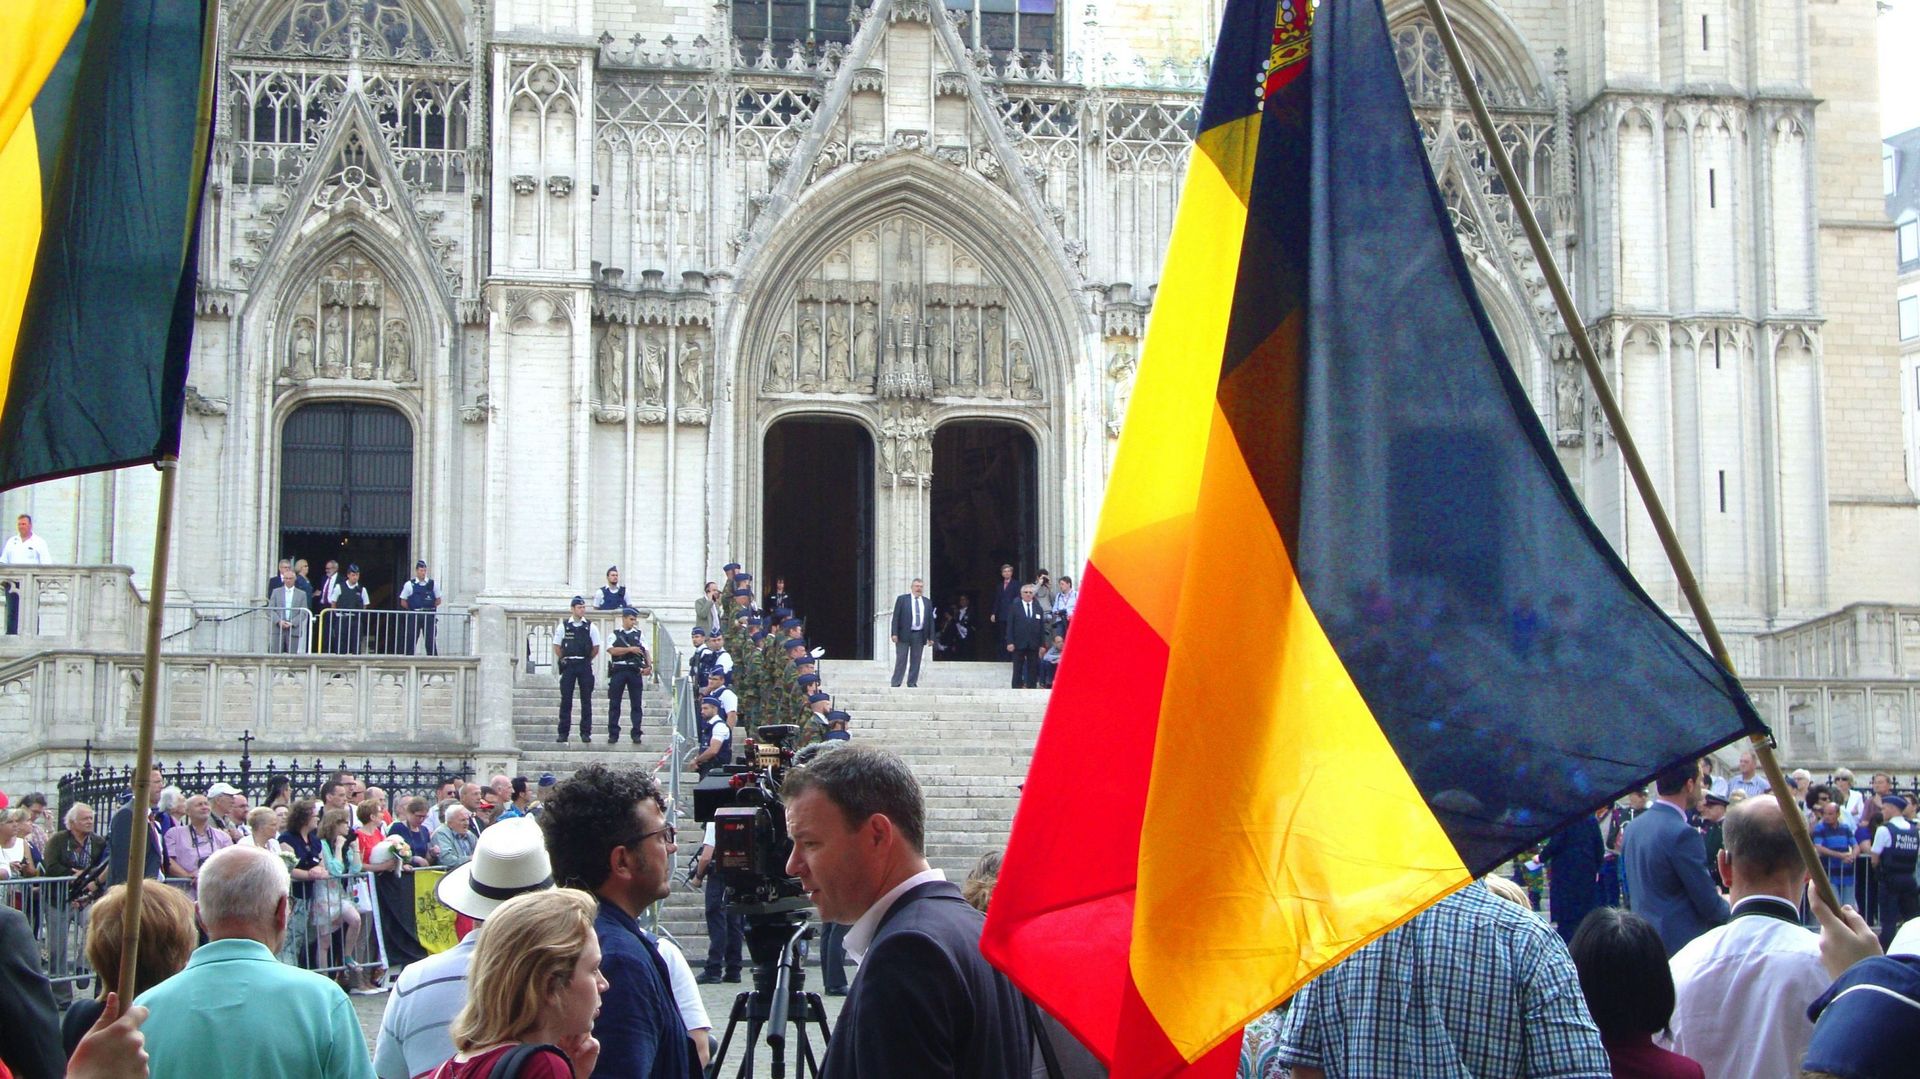 Au matin de ce jeudi 21 juillet la foule était réunie, brandissant des drapeaux et acclamant la venue du roi, devant la Cathédrale Saint-Michel-et-Gudule à Bruxelles. 